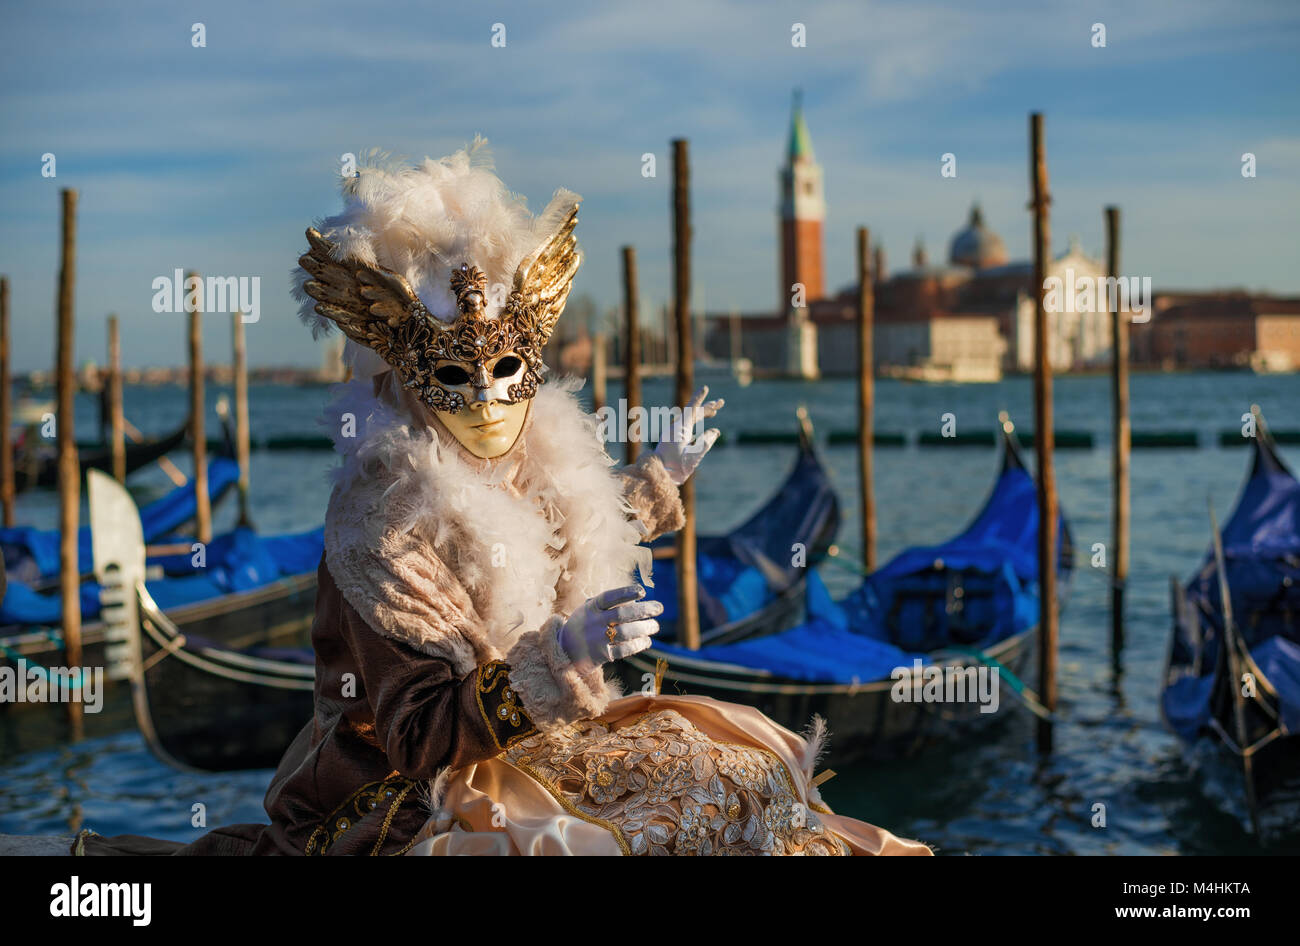 La máscara de carnaval con la hermosa Laguna de Venecia y la góndola en el fondo al atardecer Foto de stock